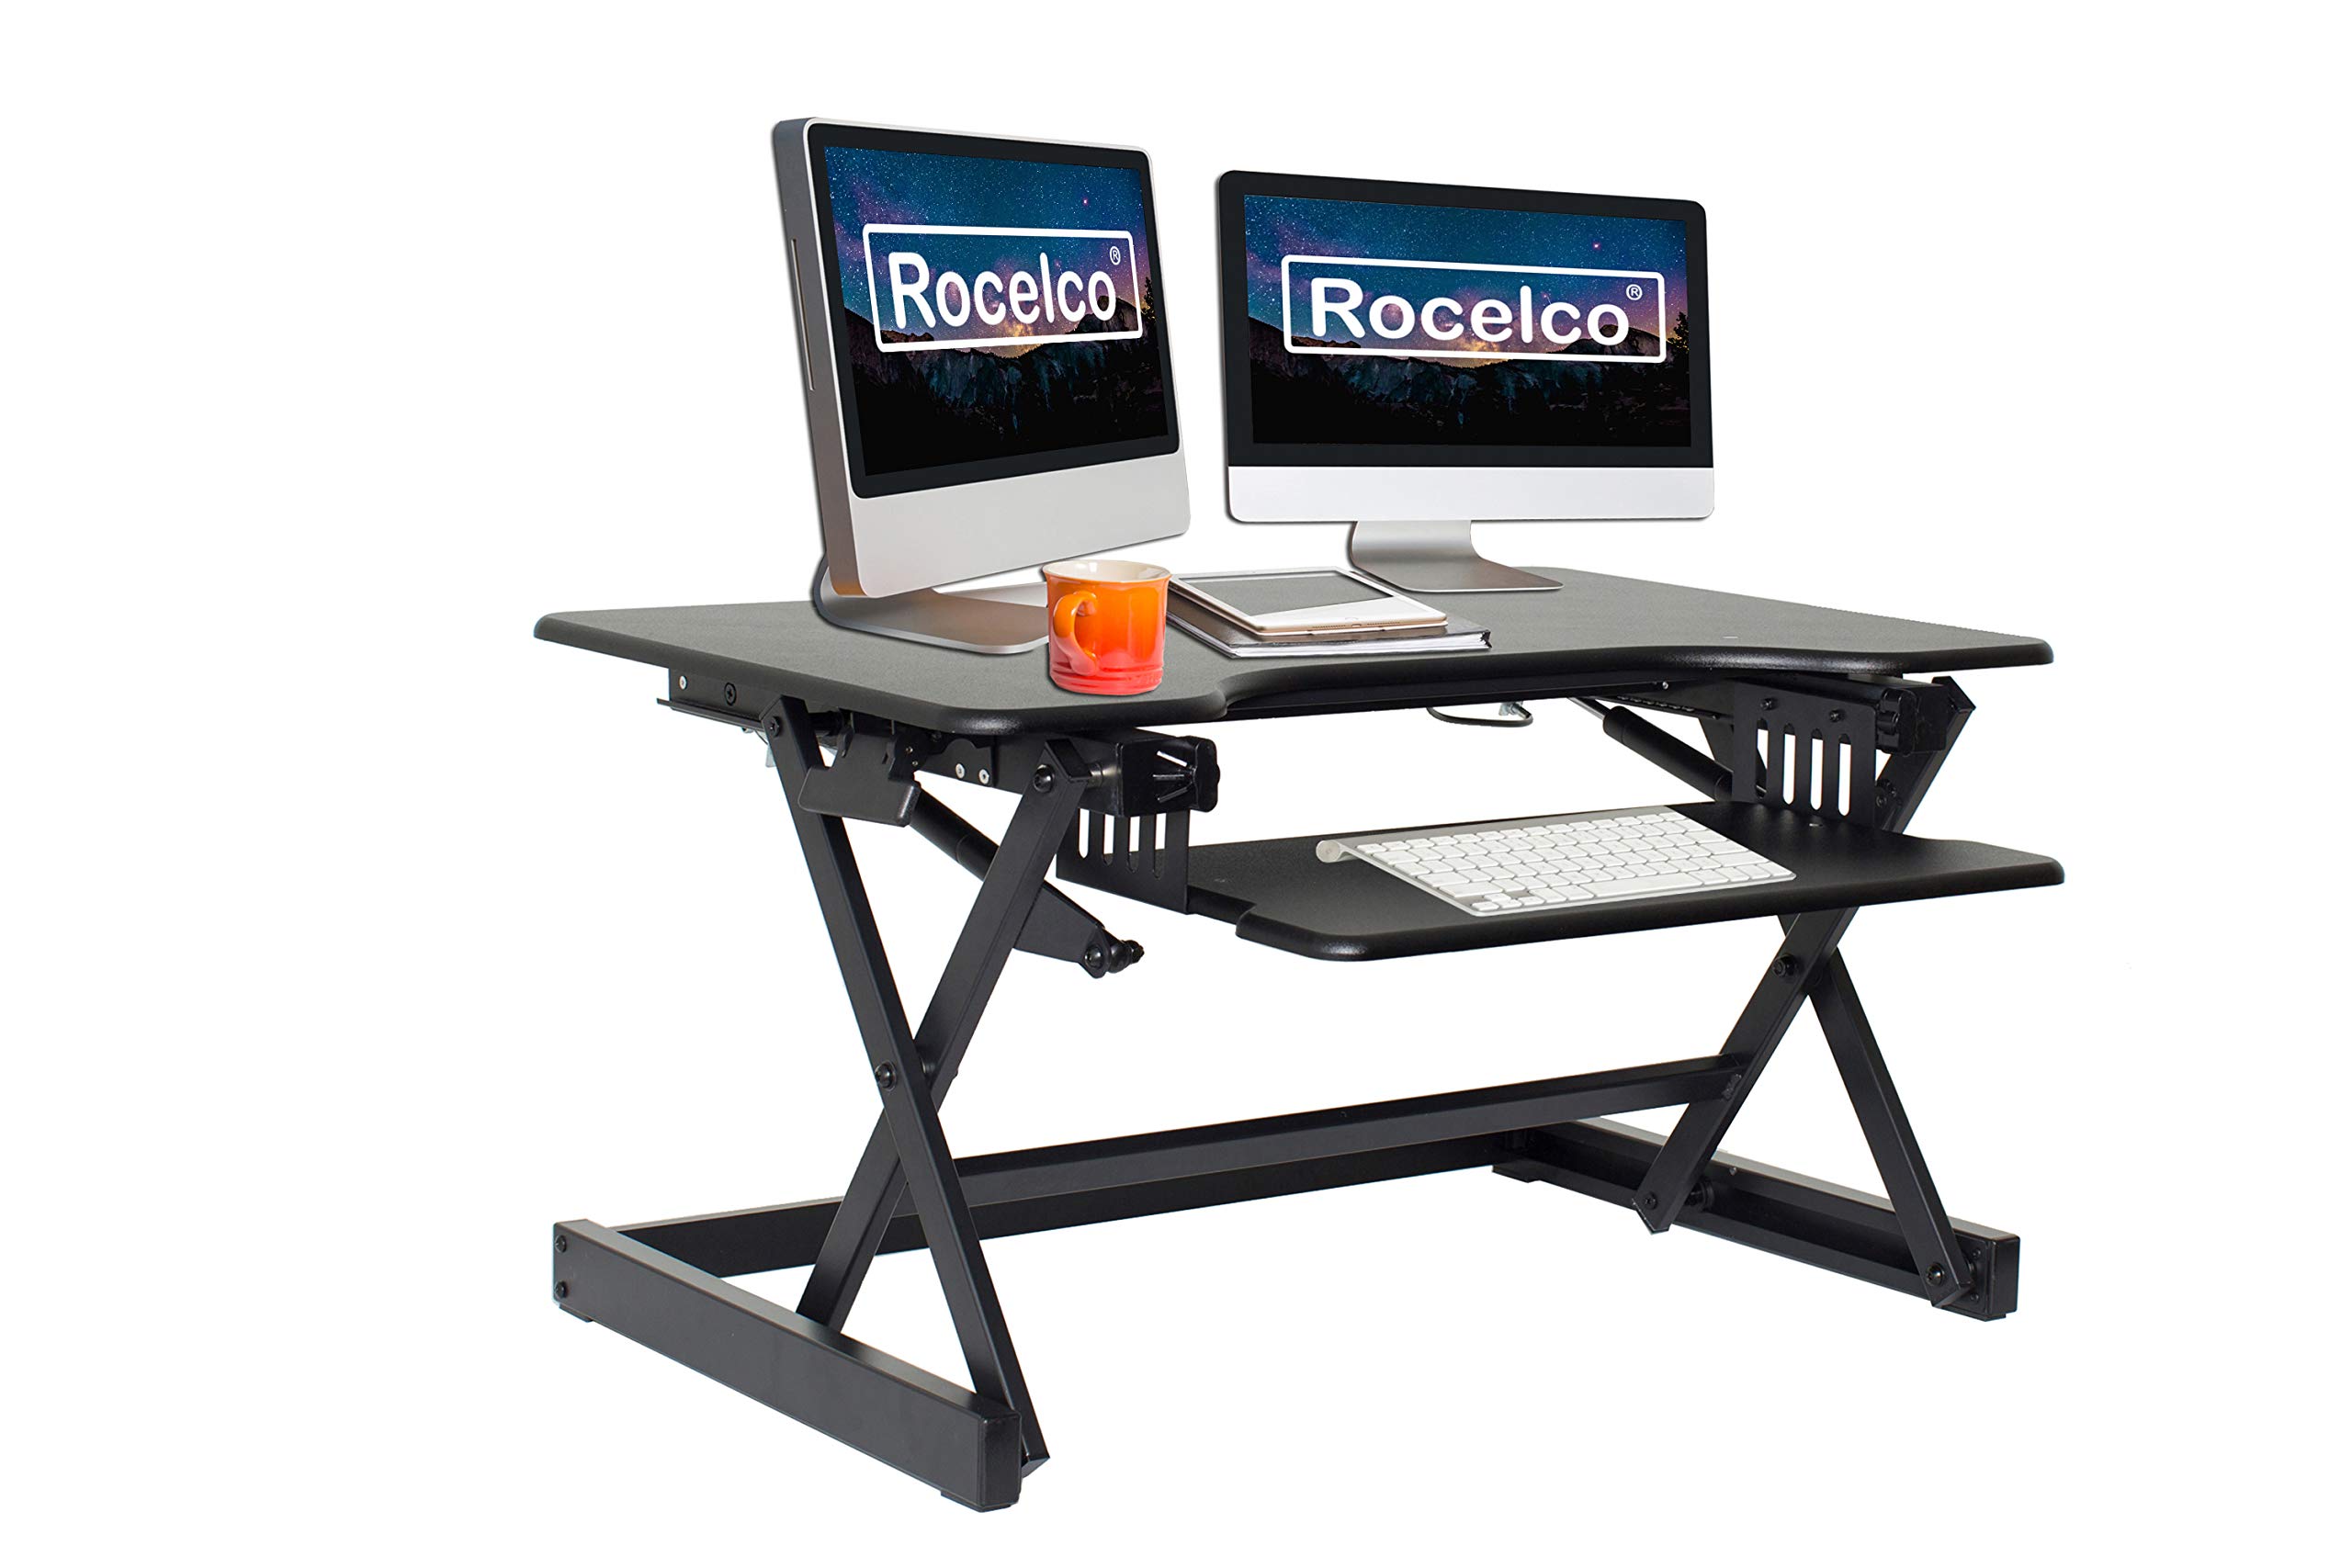 Rocelco Конвертер рабочего стола с регулируемой высотой...